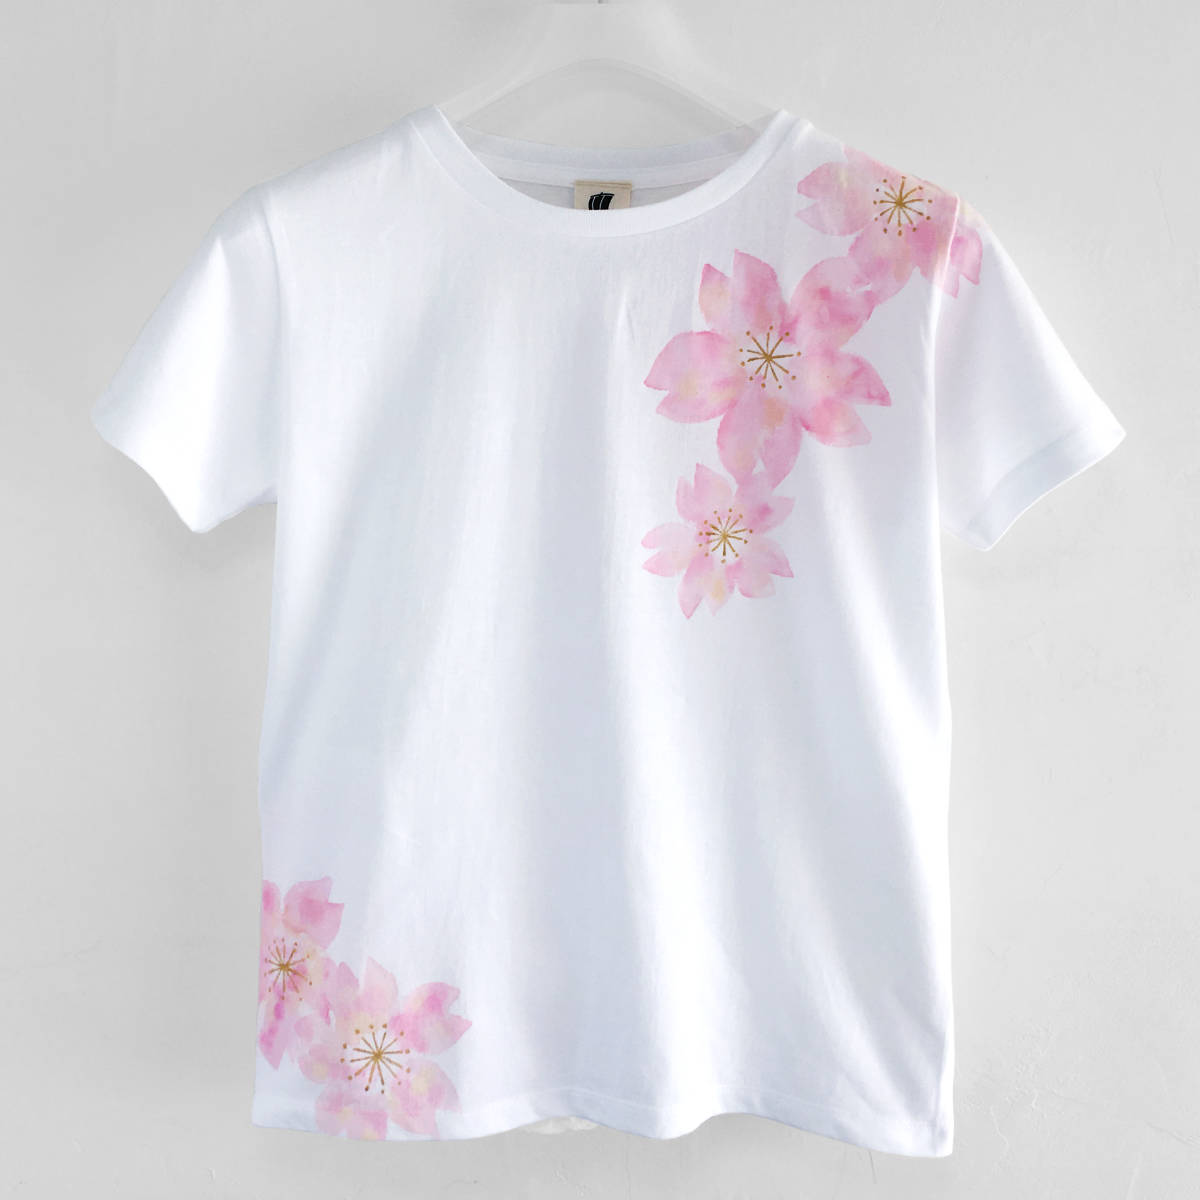 춤추는 벚꽃 패턴 티셔츠, 벚꽃색, 여성 M 사이즈, 손으로 그린 벚꽃 패턴 티셔츠, 여름, GM, 중간 사이즈, 크루 넥, 무늬가 있는